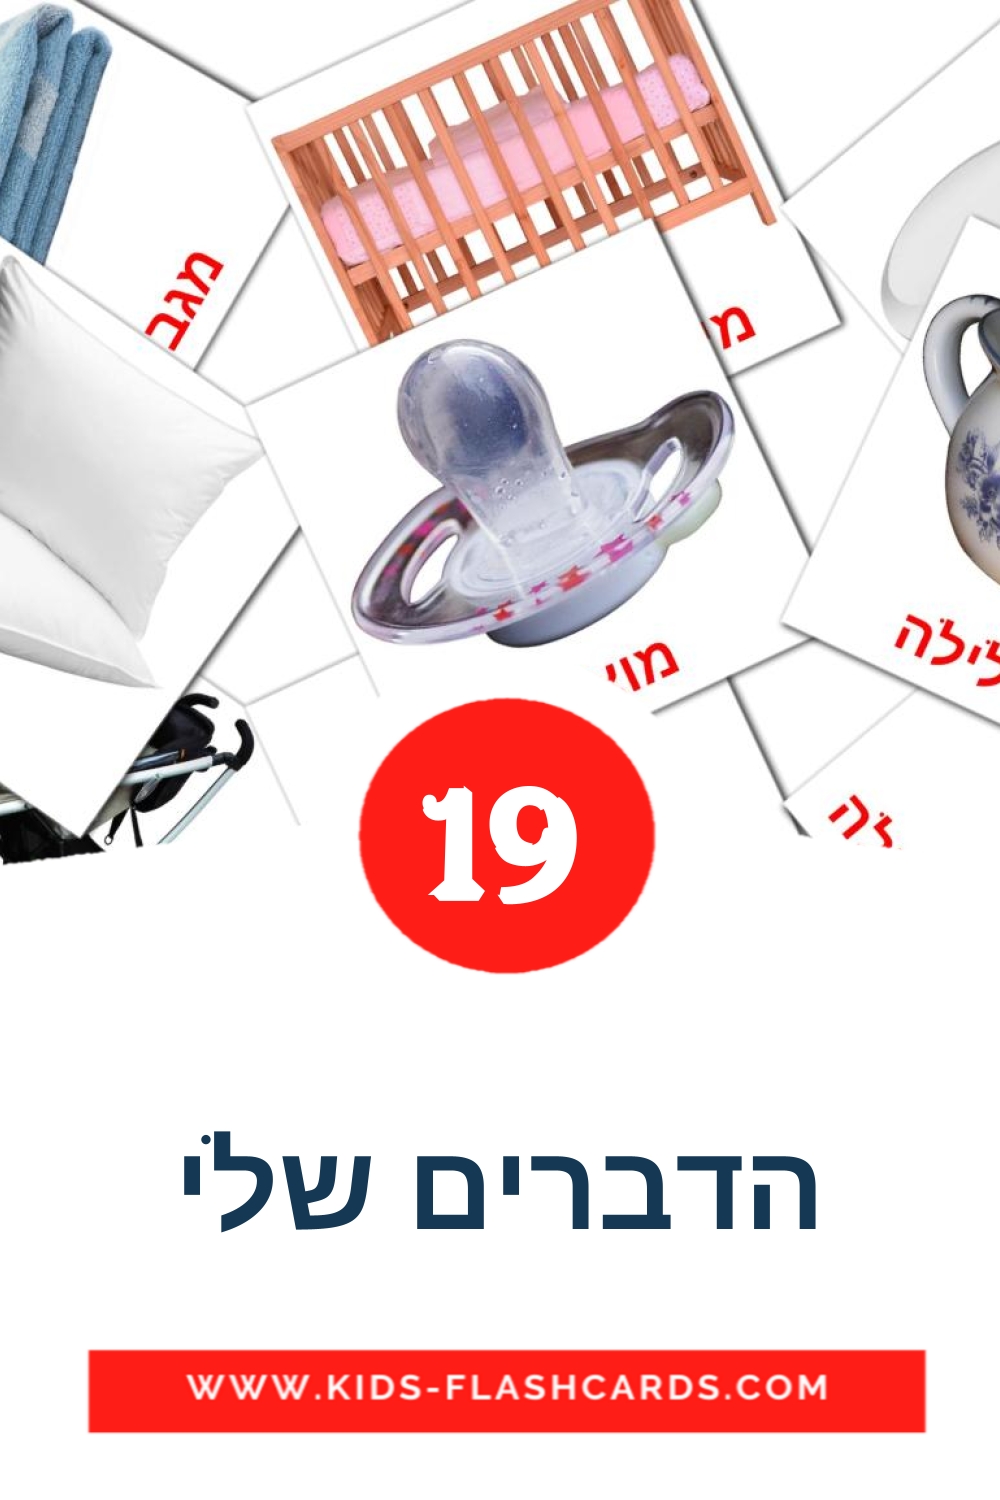 19 Cartões com Imagens de הדברים שלי para Jardim de Infância em hebraico